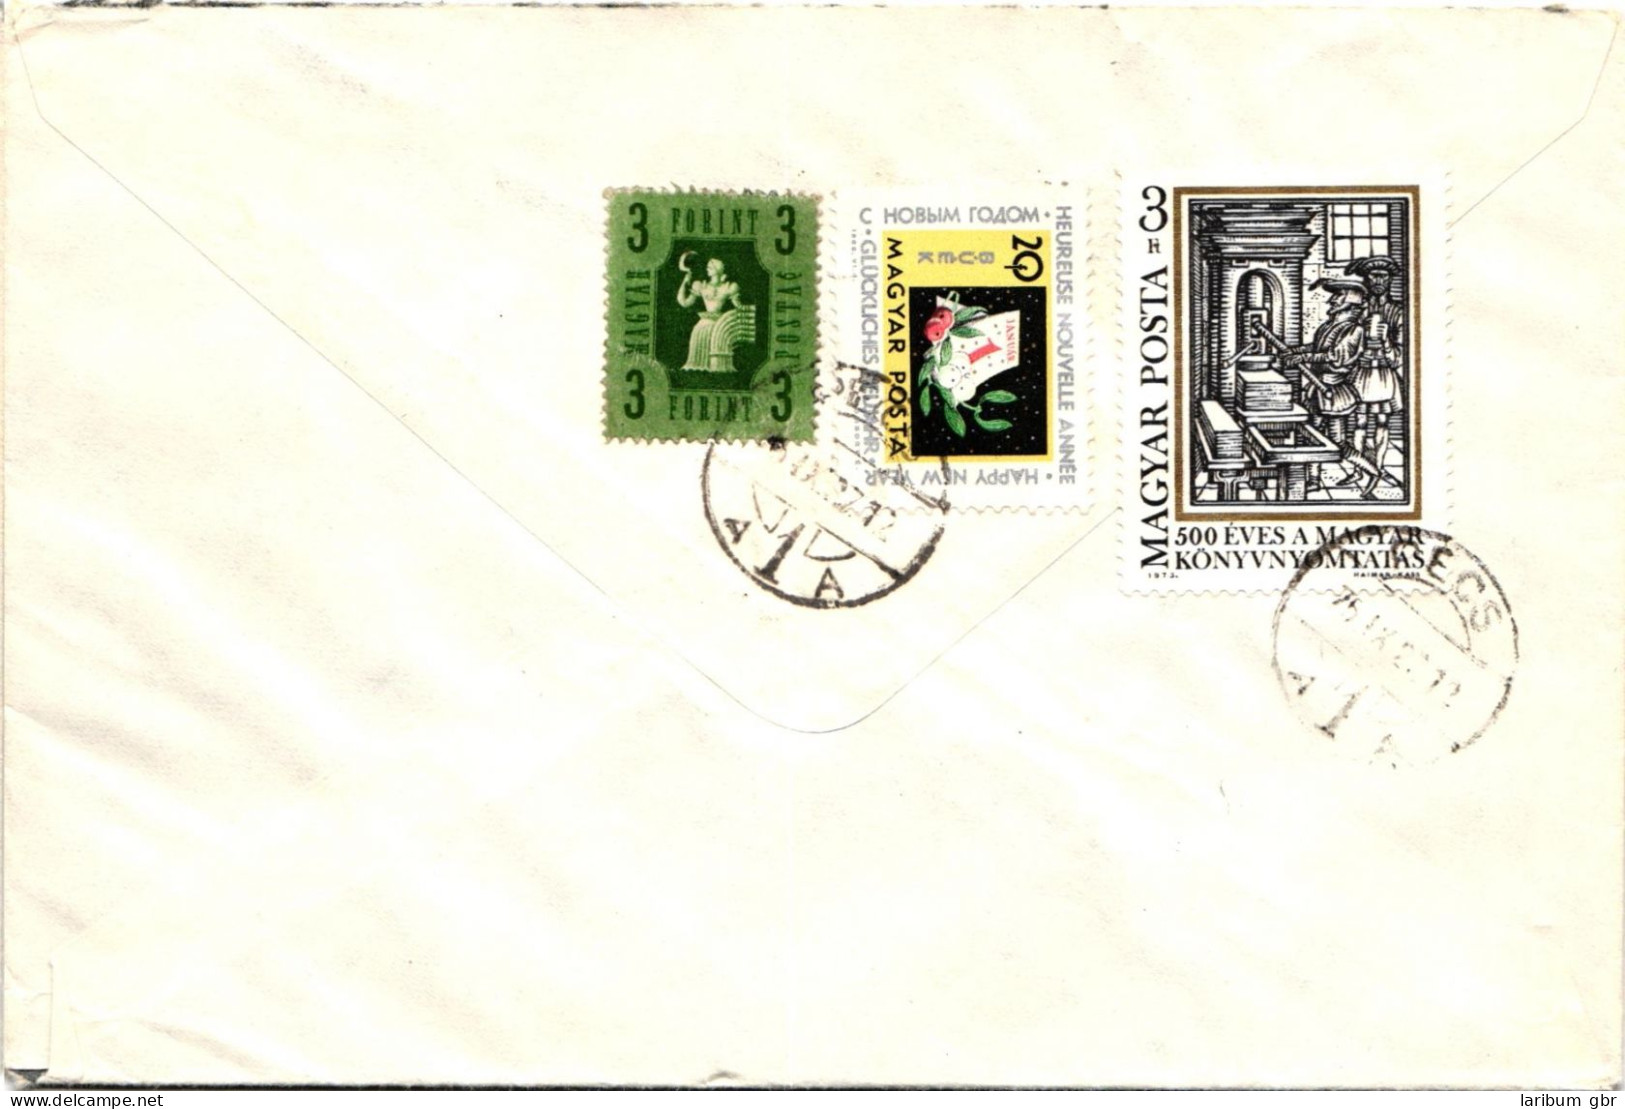 Ungarn 3046-52 A/B verteilt auf 7 Briefe als Einschreiben nach Aachen #JD115